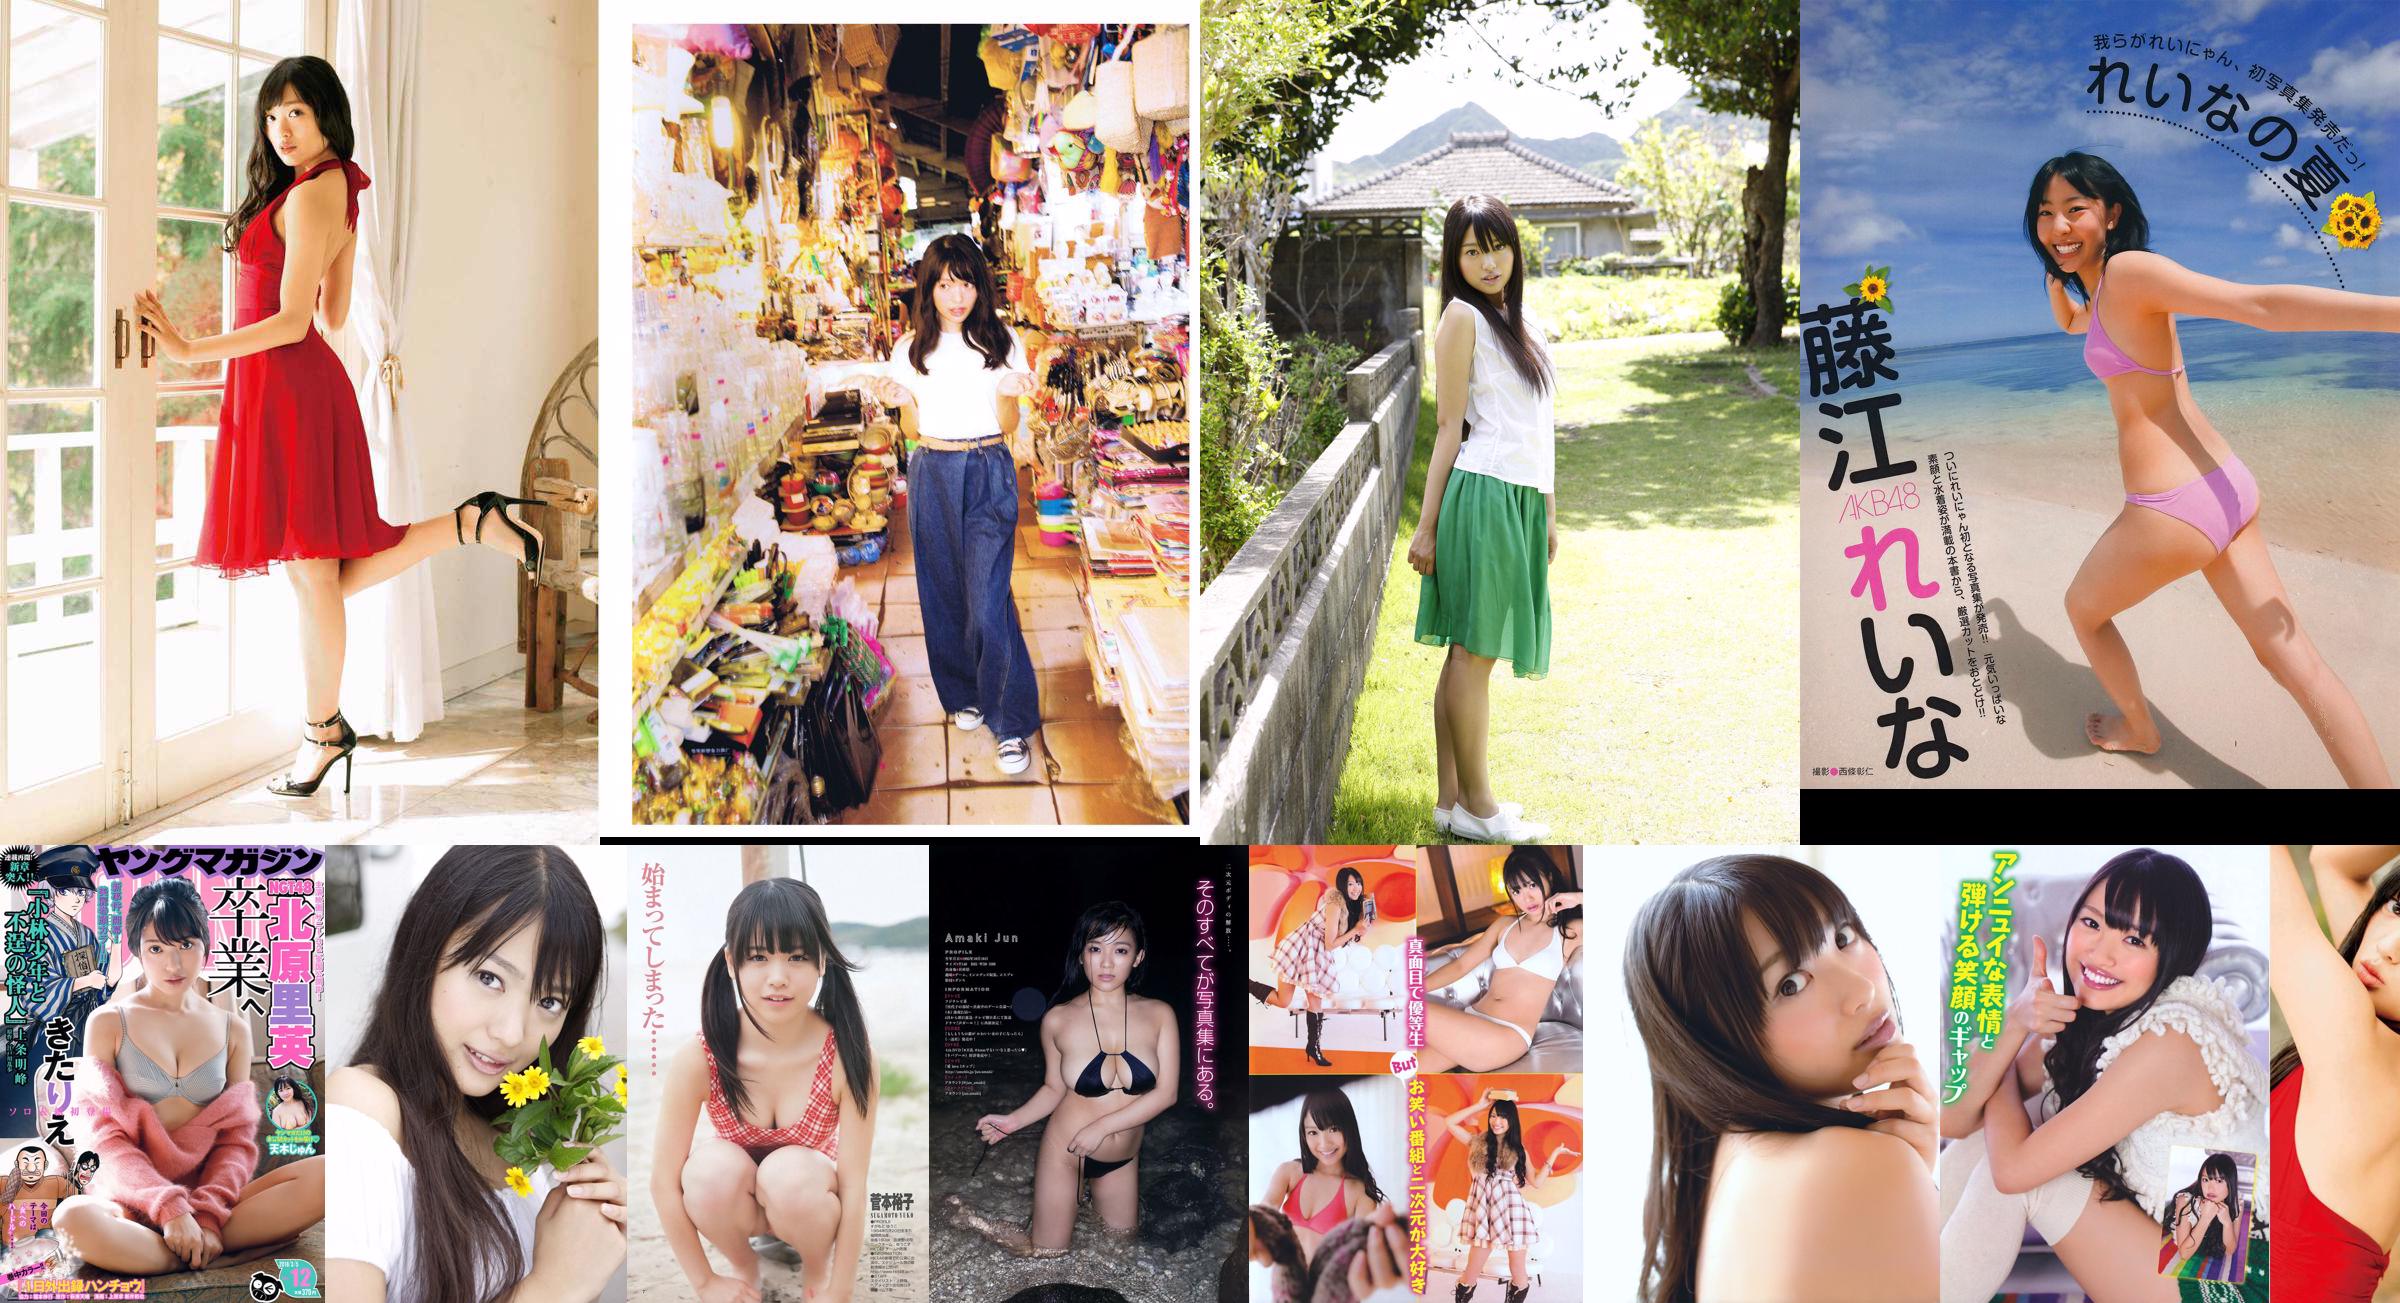 [EX Taishu] Rie Kitahara Serina KONAN Yumi Fujikoso 2011 Nr. 08 Foto No.4508fd Seite 11